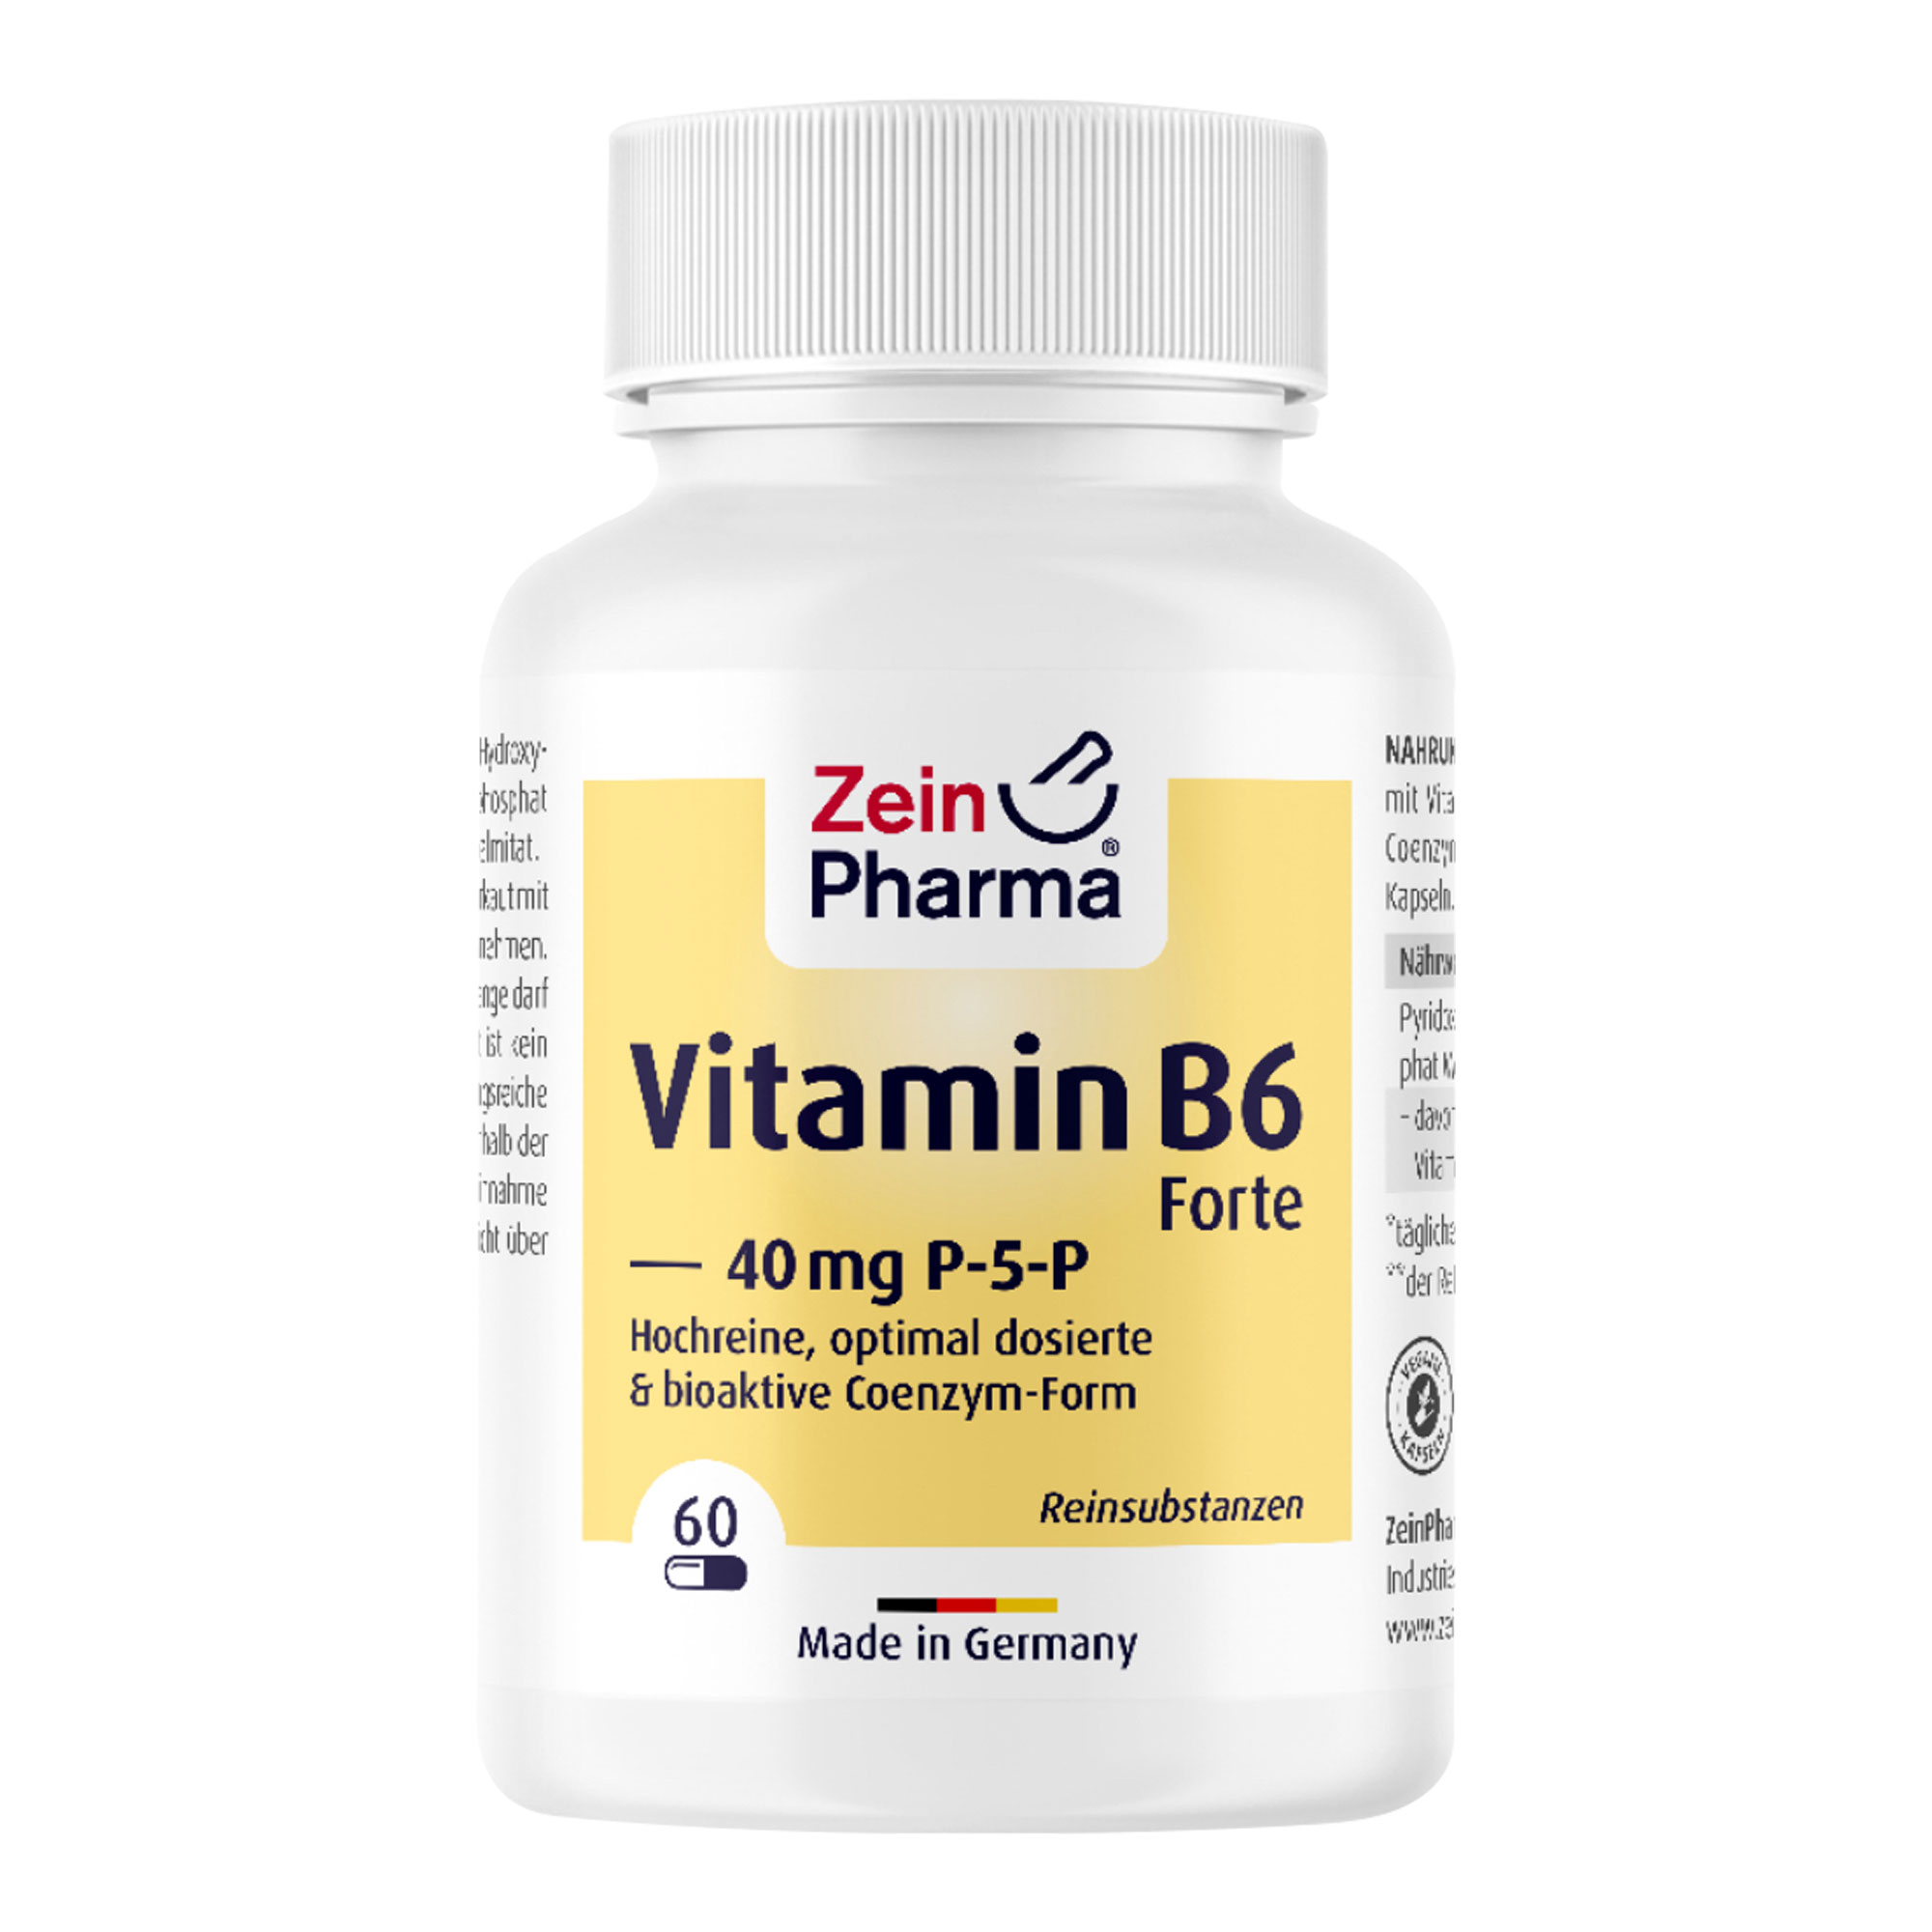 Nahrungsergänzungsmitel mit Vitamin B6 in seiner aktiven Coenzym-Form, Pyridoxal-5-Phosphat, in vegetarischen Kapseln.